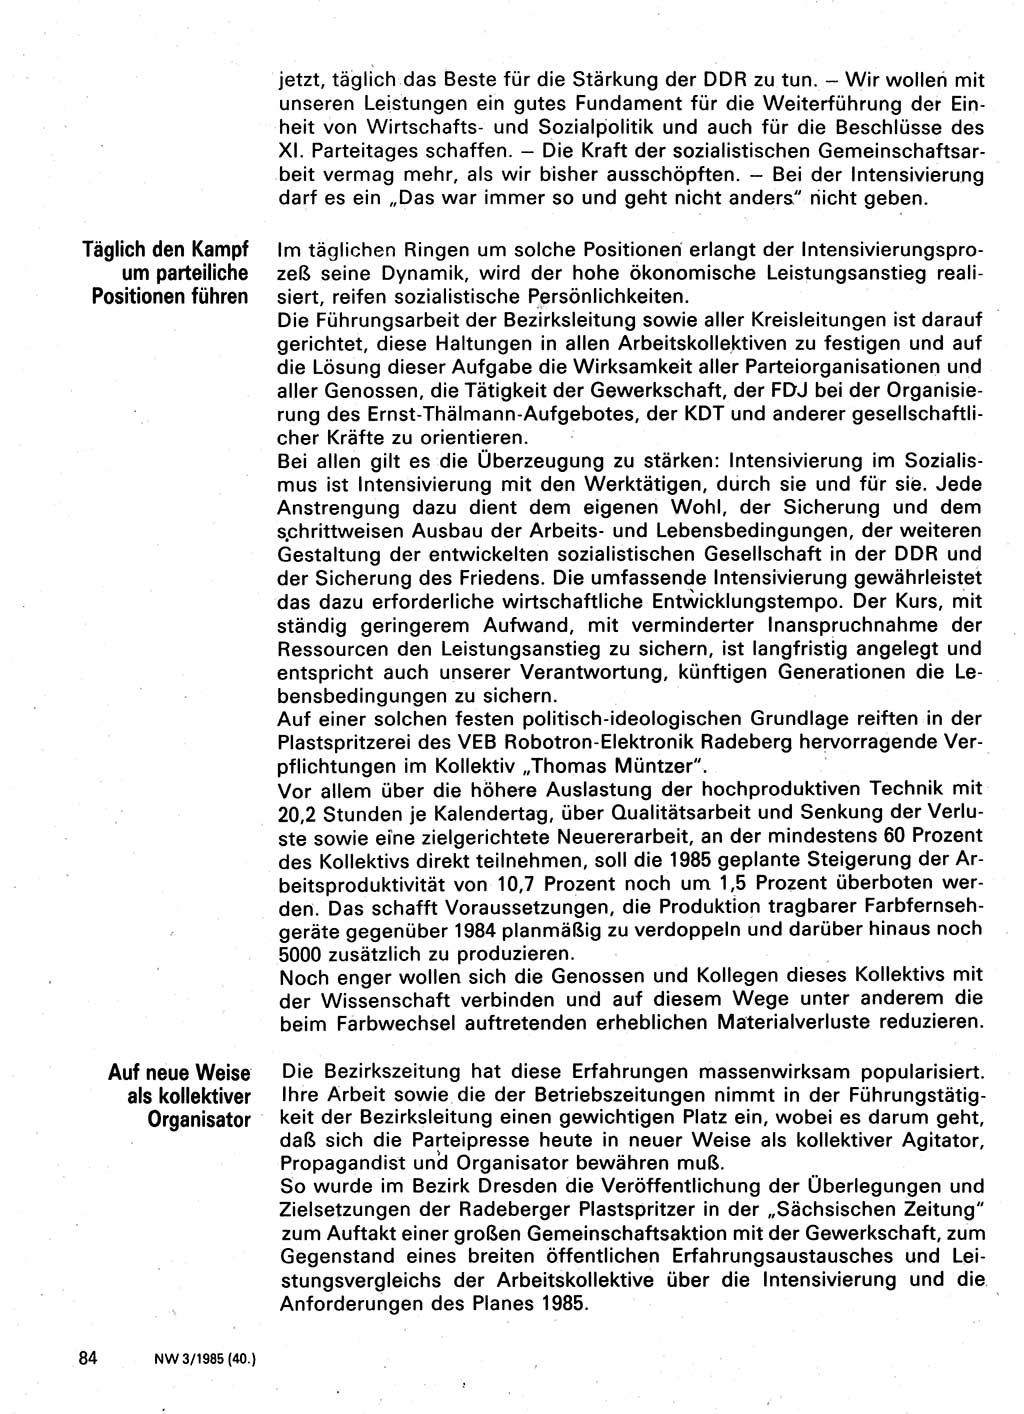 Neuer Weg (NW), Organ des Zentralkomitees (ZK) der SED (Sozialistische Einheitspartei Deutschlands) für Fragen des Parteilebens, 40. Jahrgang [Deutsche Demokratische Republik (DDR)] 1985, Seite 84 (NW ZK SED DDR 1985, S. 84)